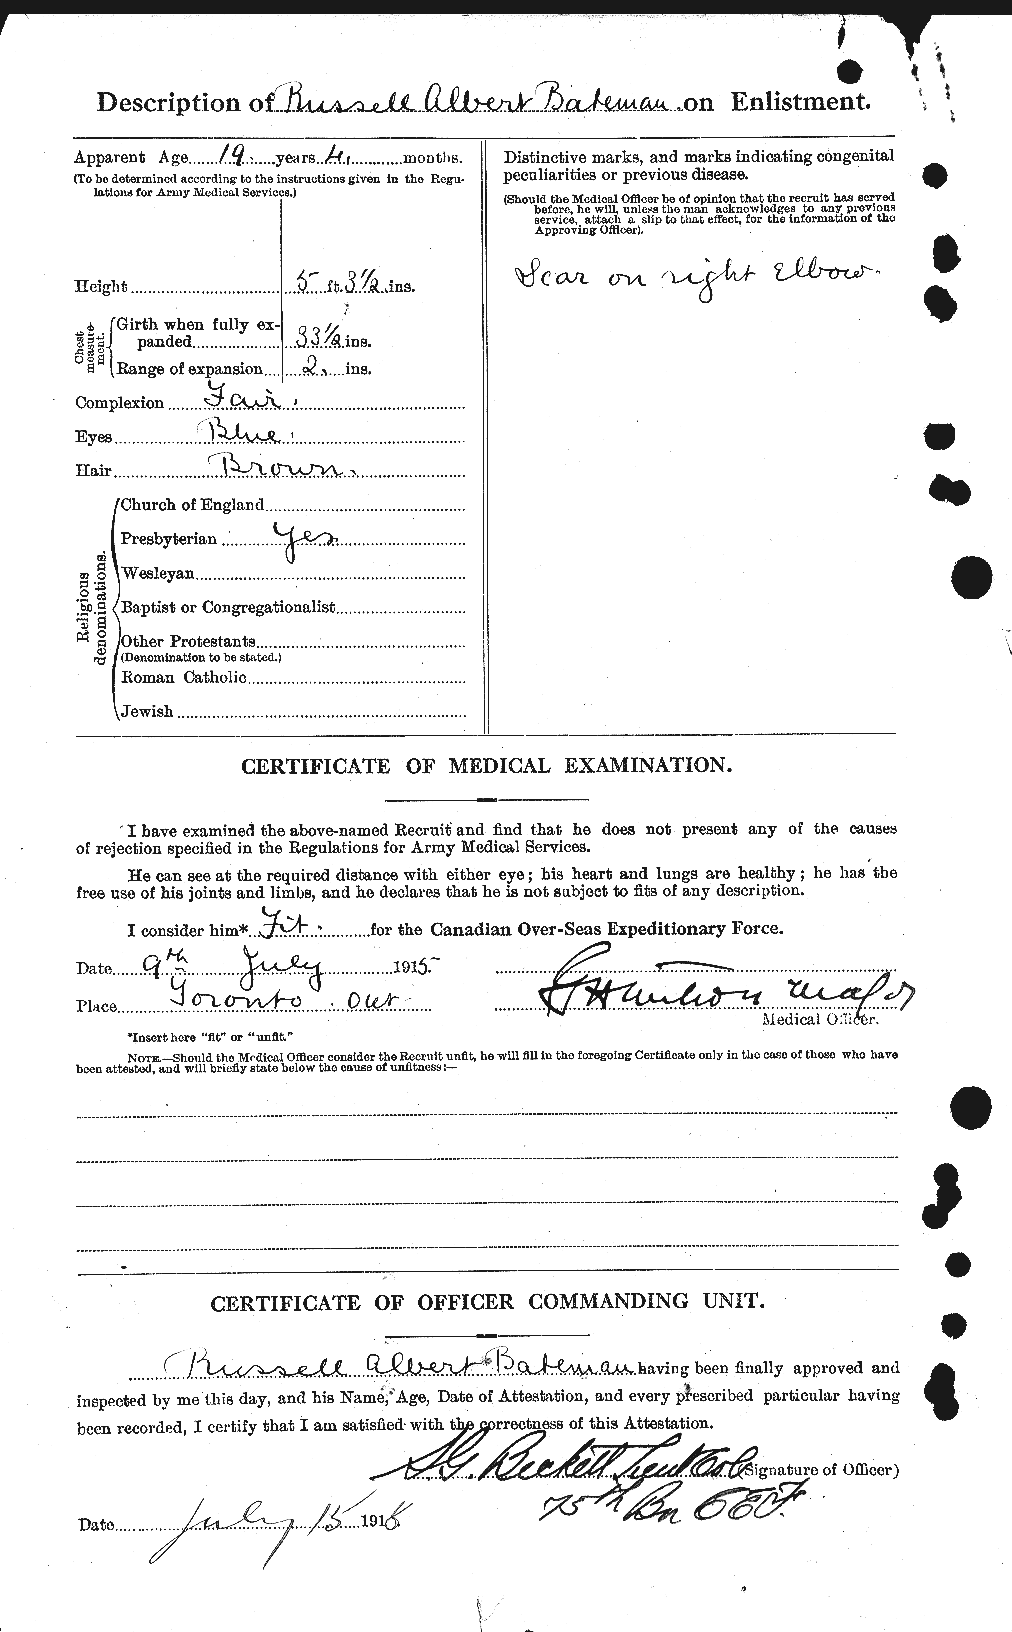 Dossiers du Personnel de la Première Guerre mondiale - CEC 227976b